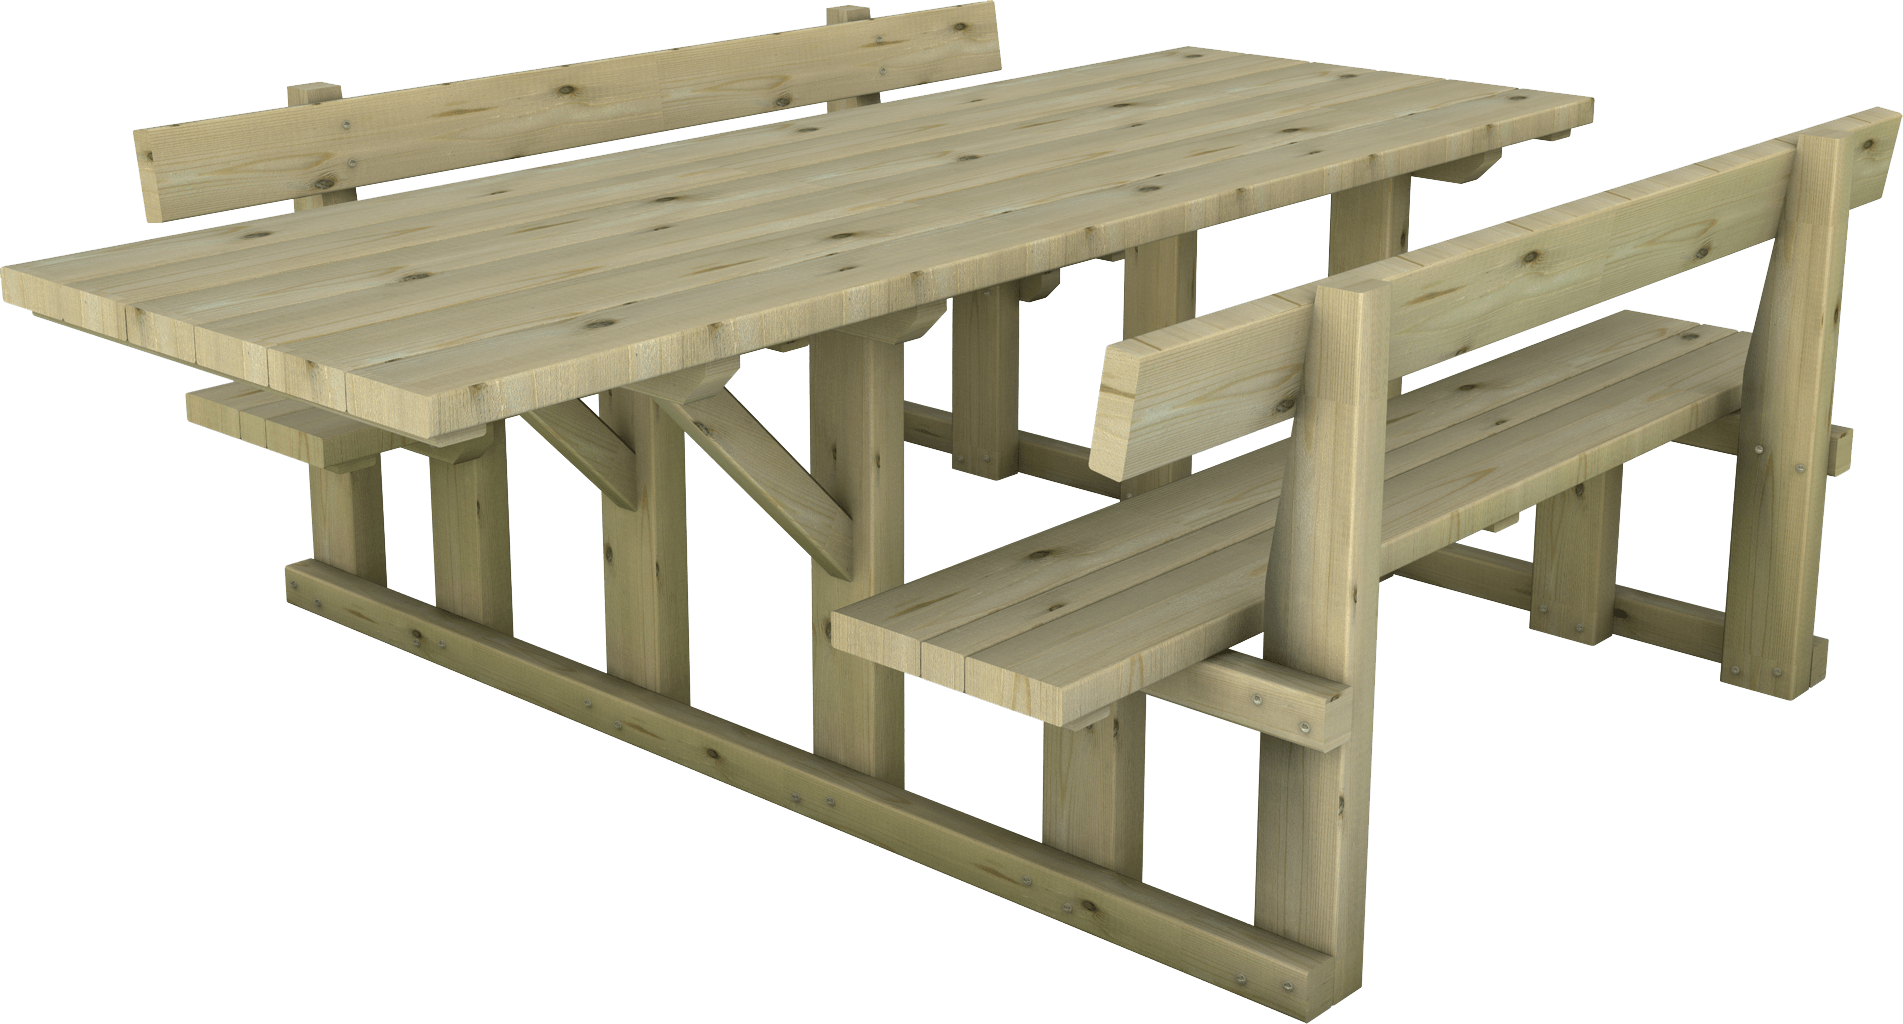 Tavolo in legno di pino impregnato o larice con estensione per disabili realizzato da Linea Montanalegno - ILT